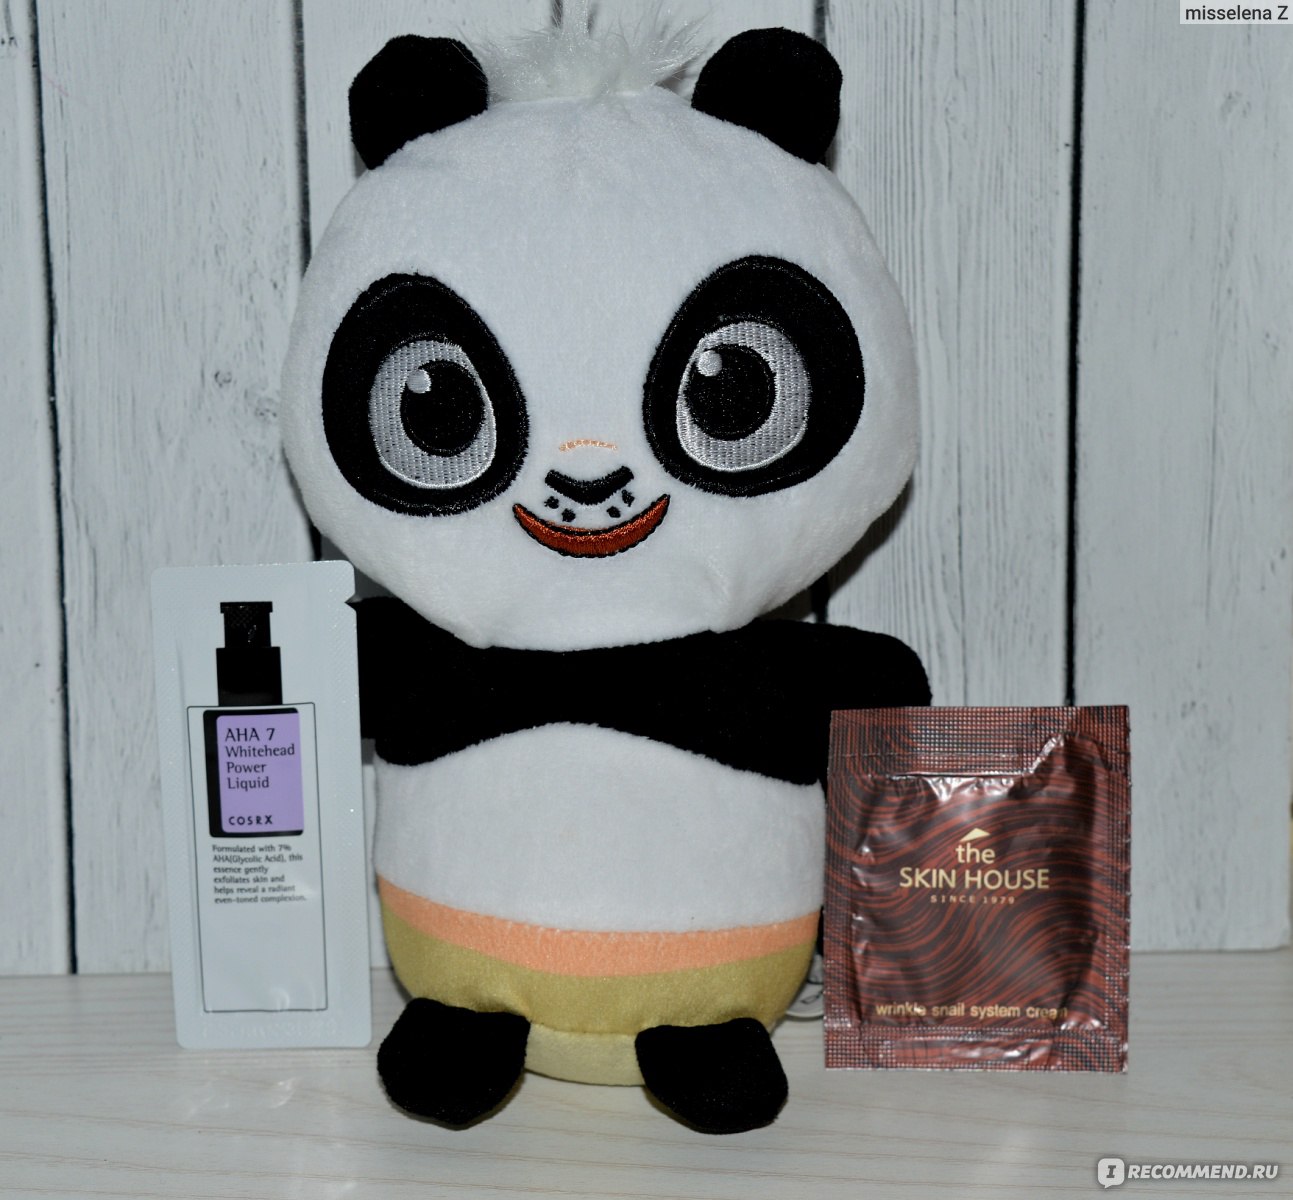 Интернет-магазин корейской косметики Panda Shop - shop-panda.com фото